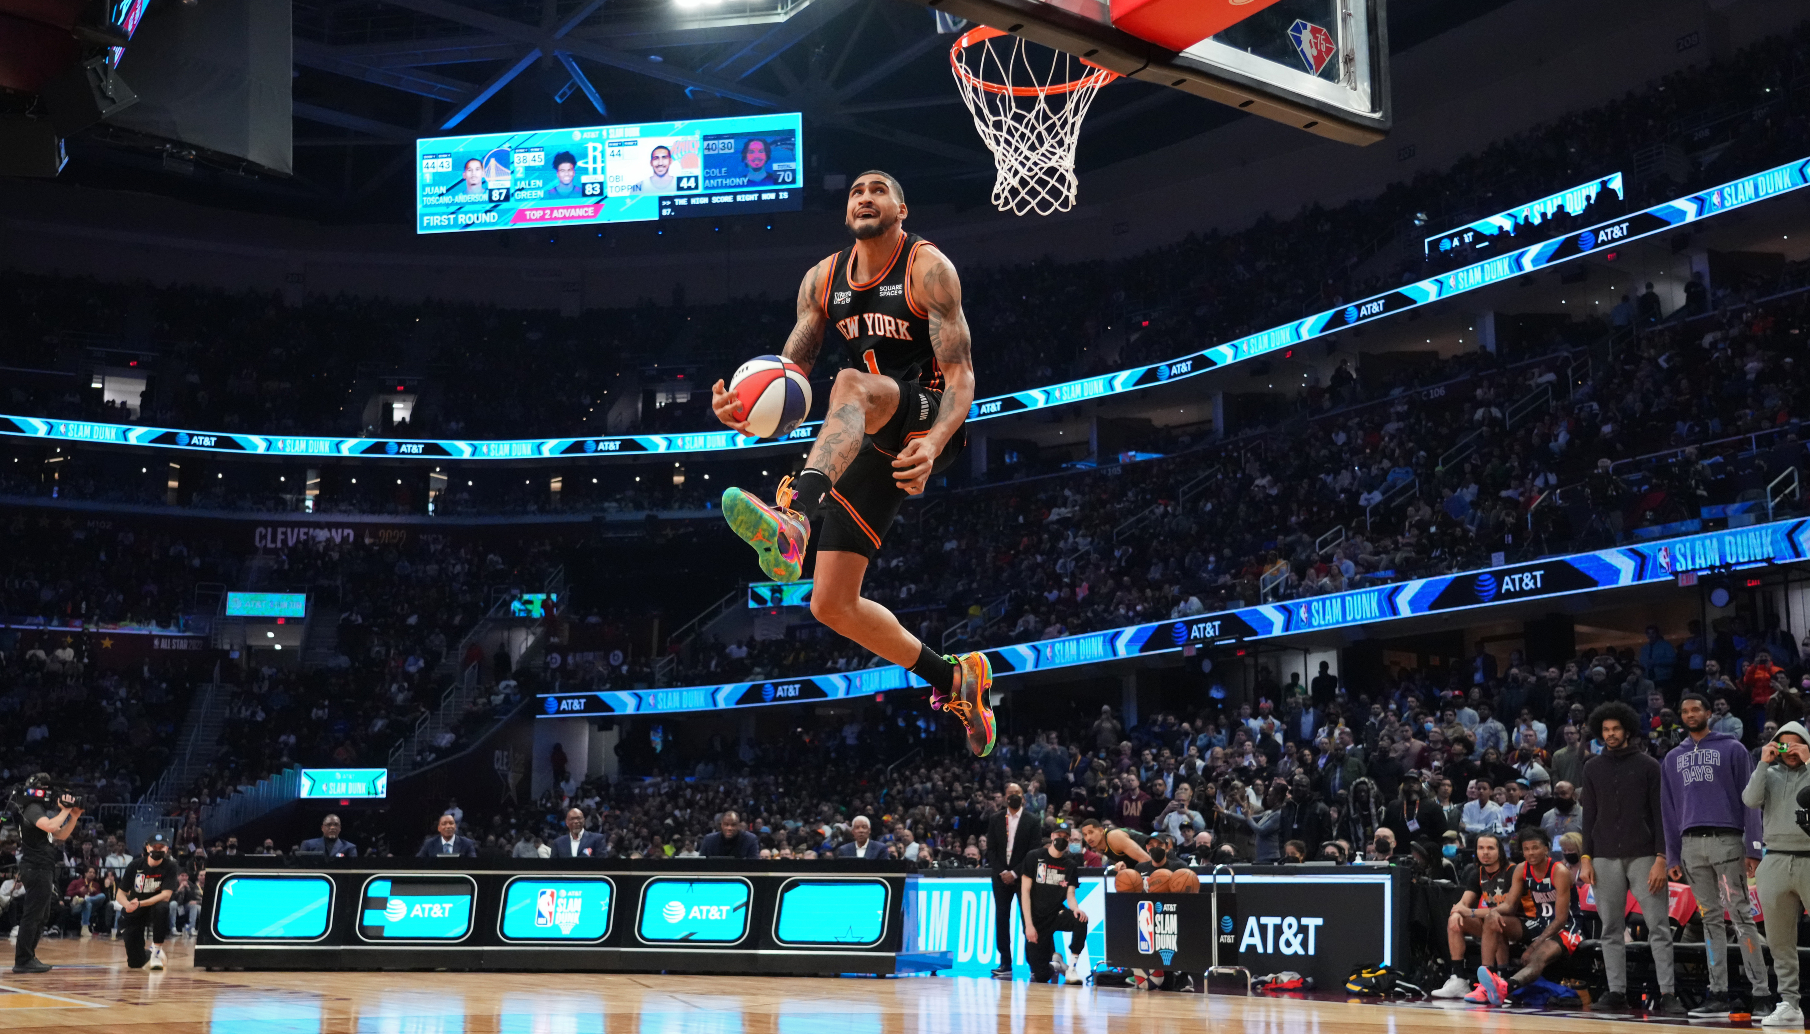 Juan Toscano-Anderson skies over Andrew Wiggins in NBA Dunk